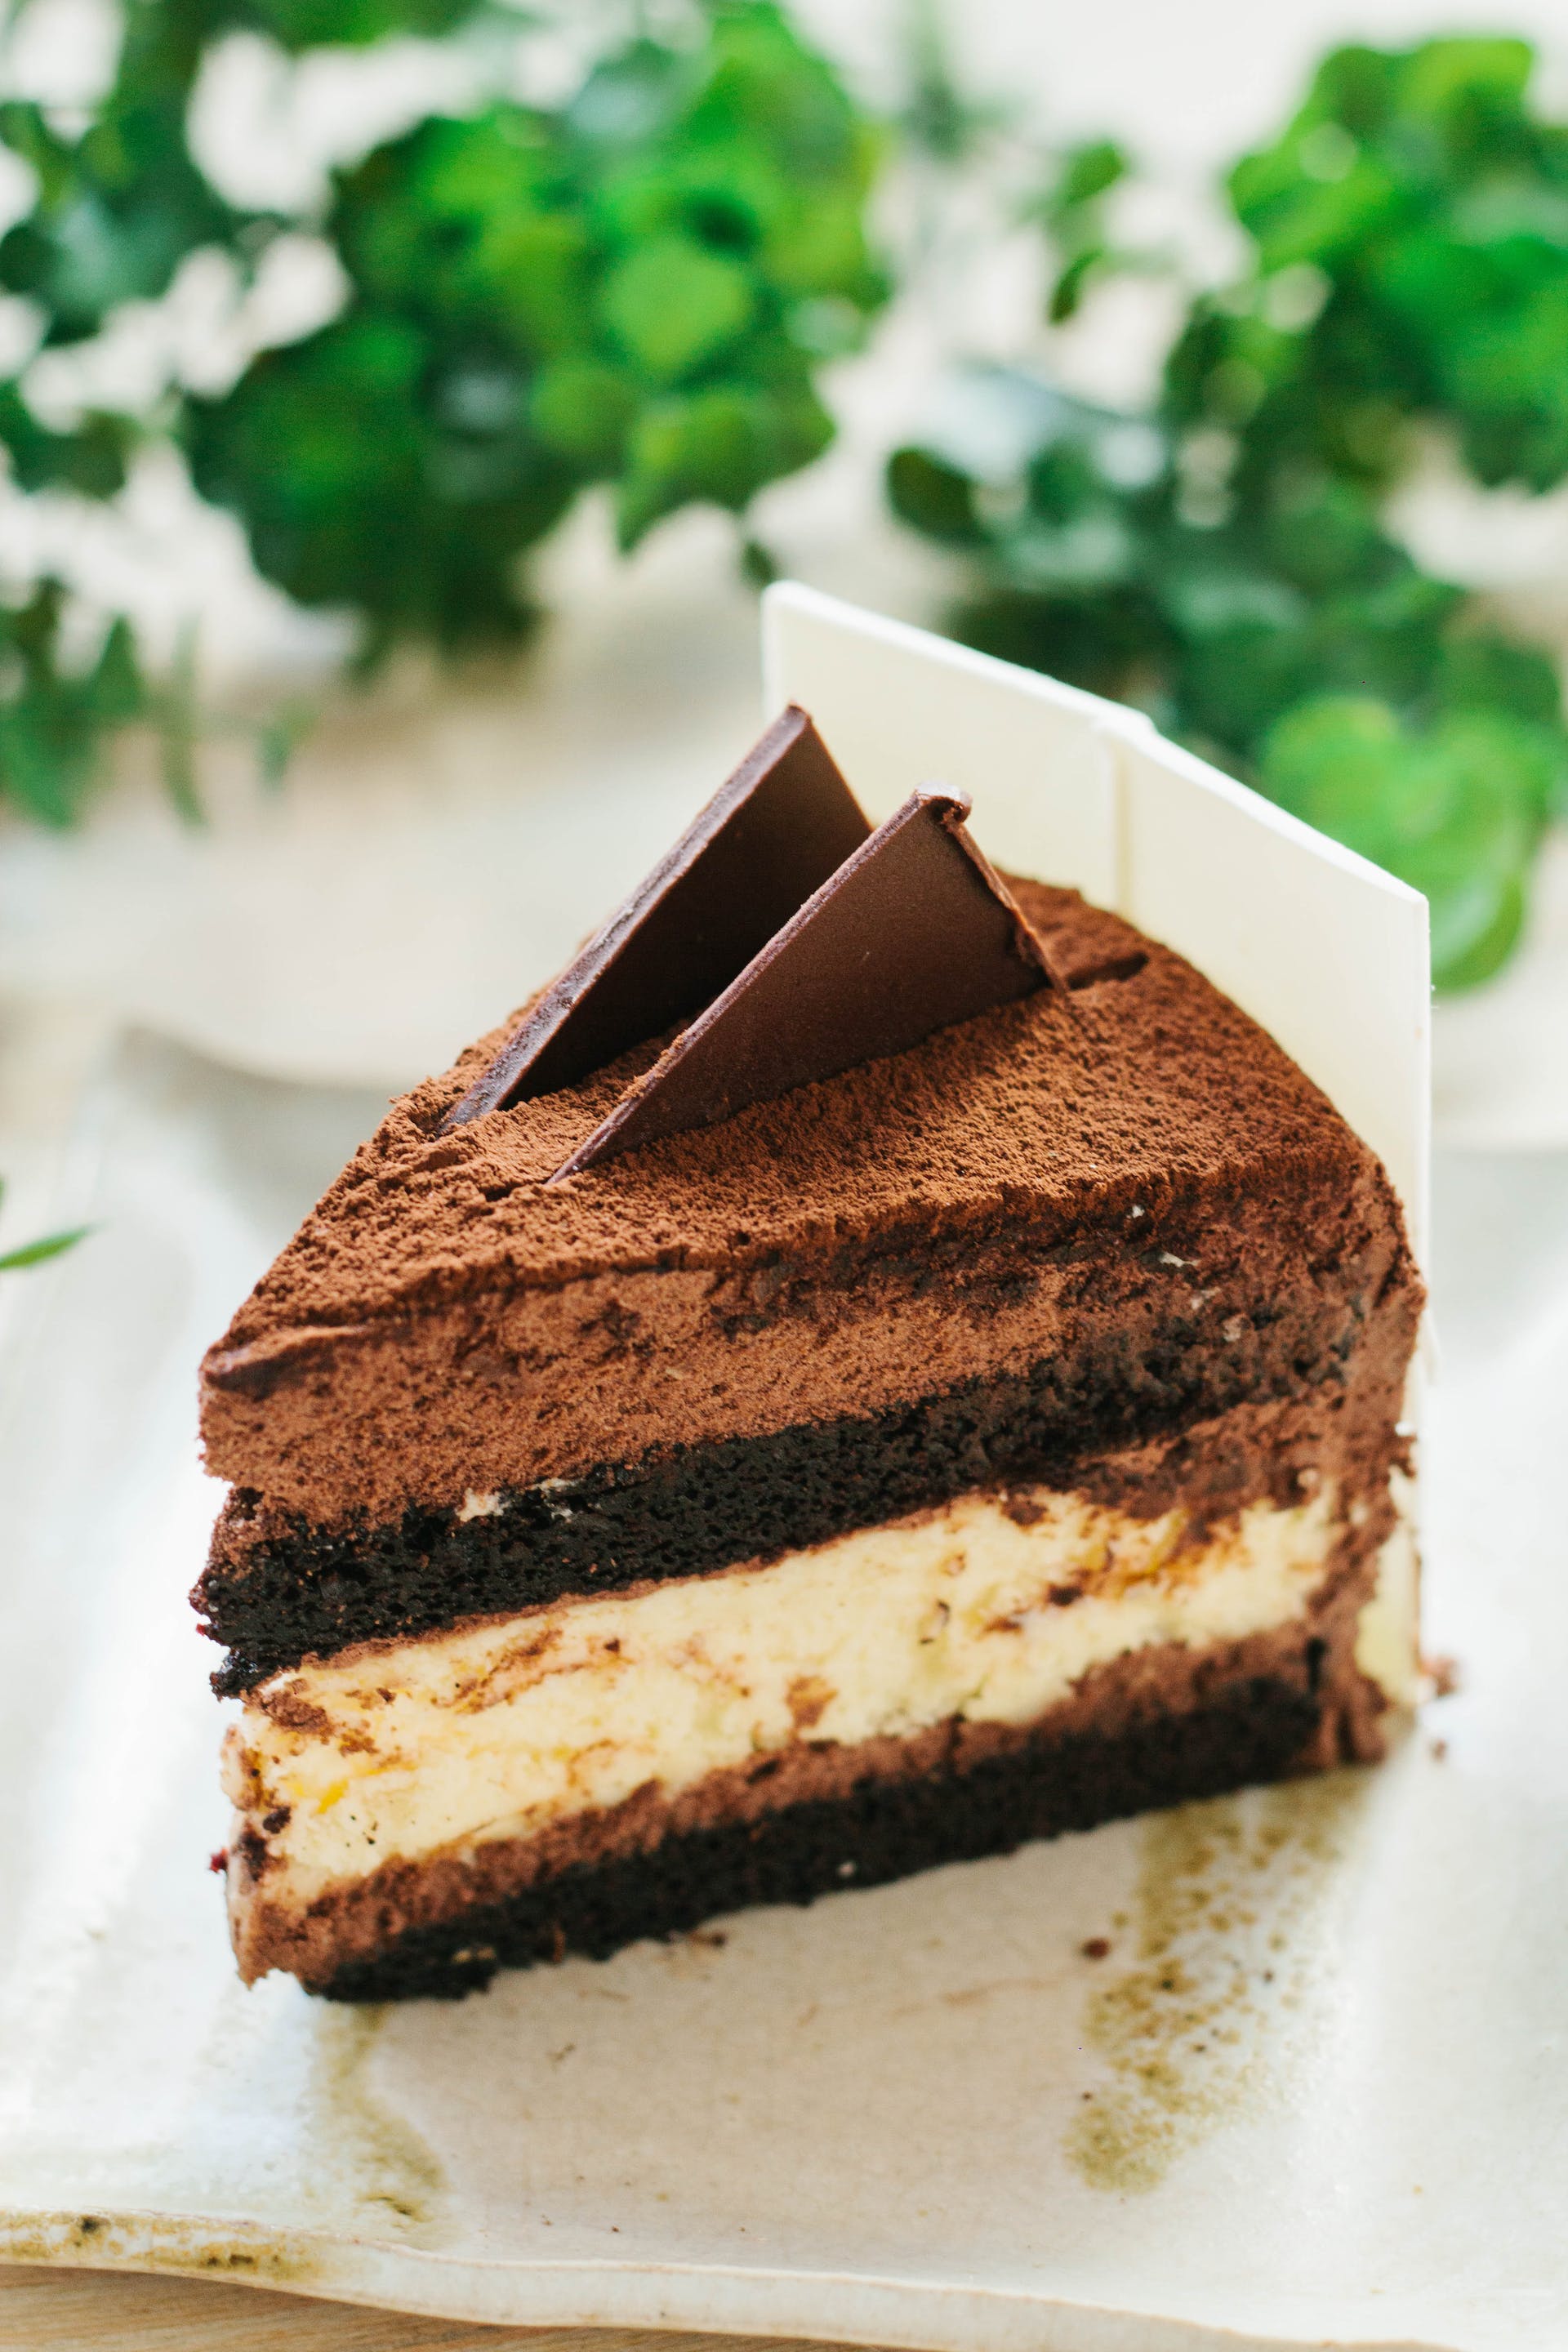 Ein Stück Schokoladenkuchen | Quelle: Pexels